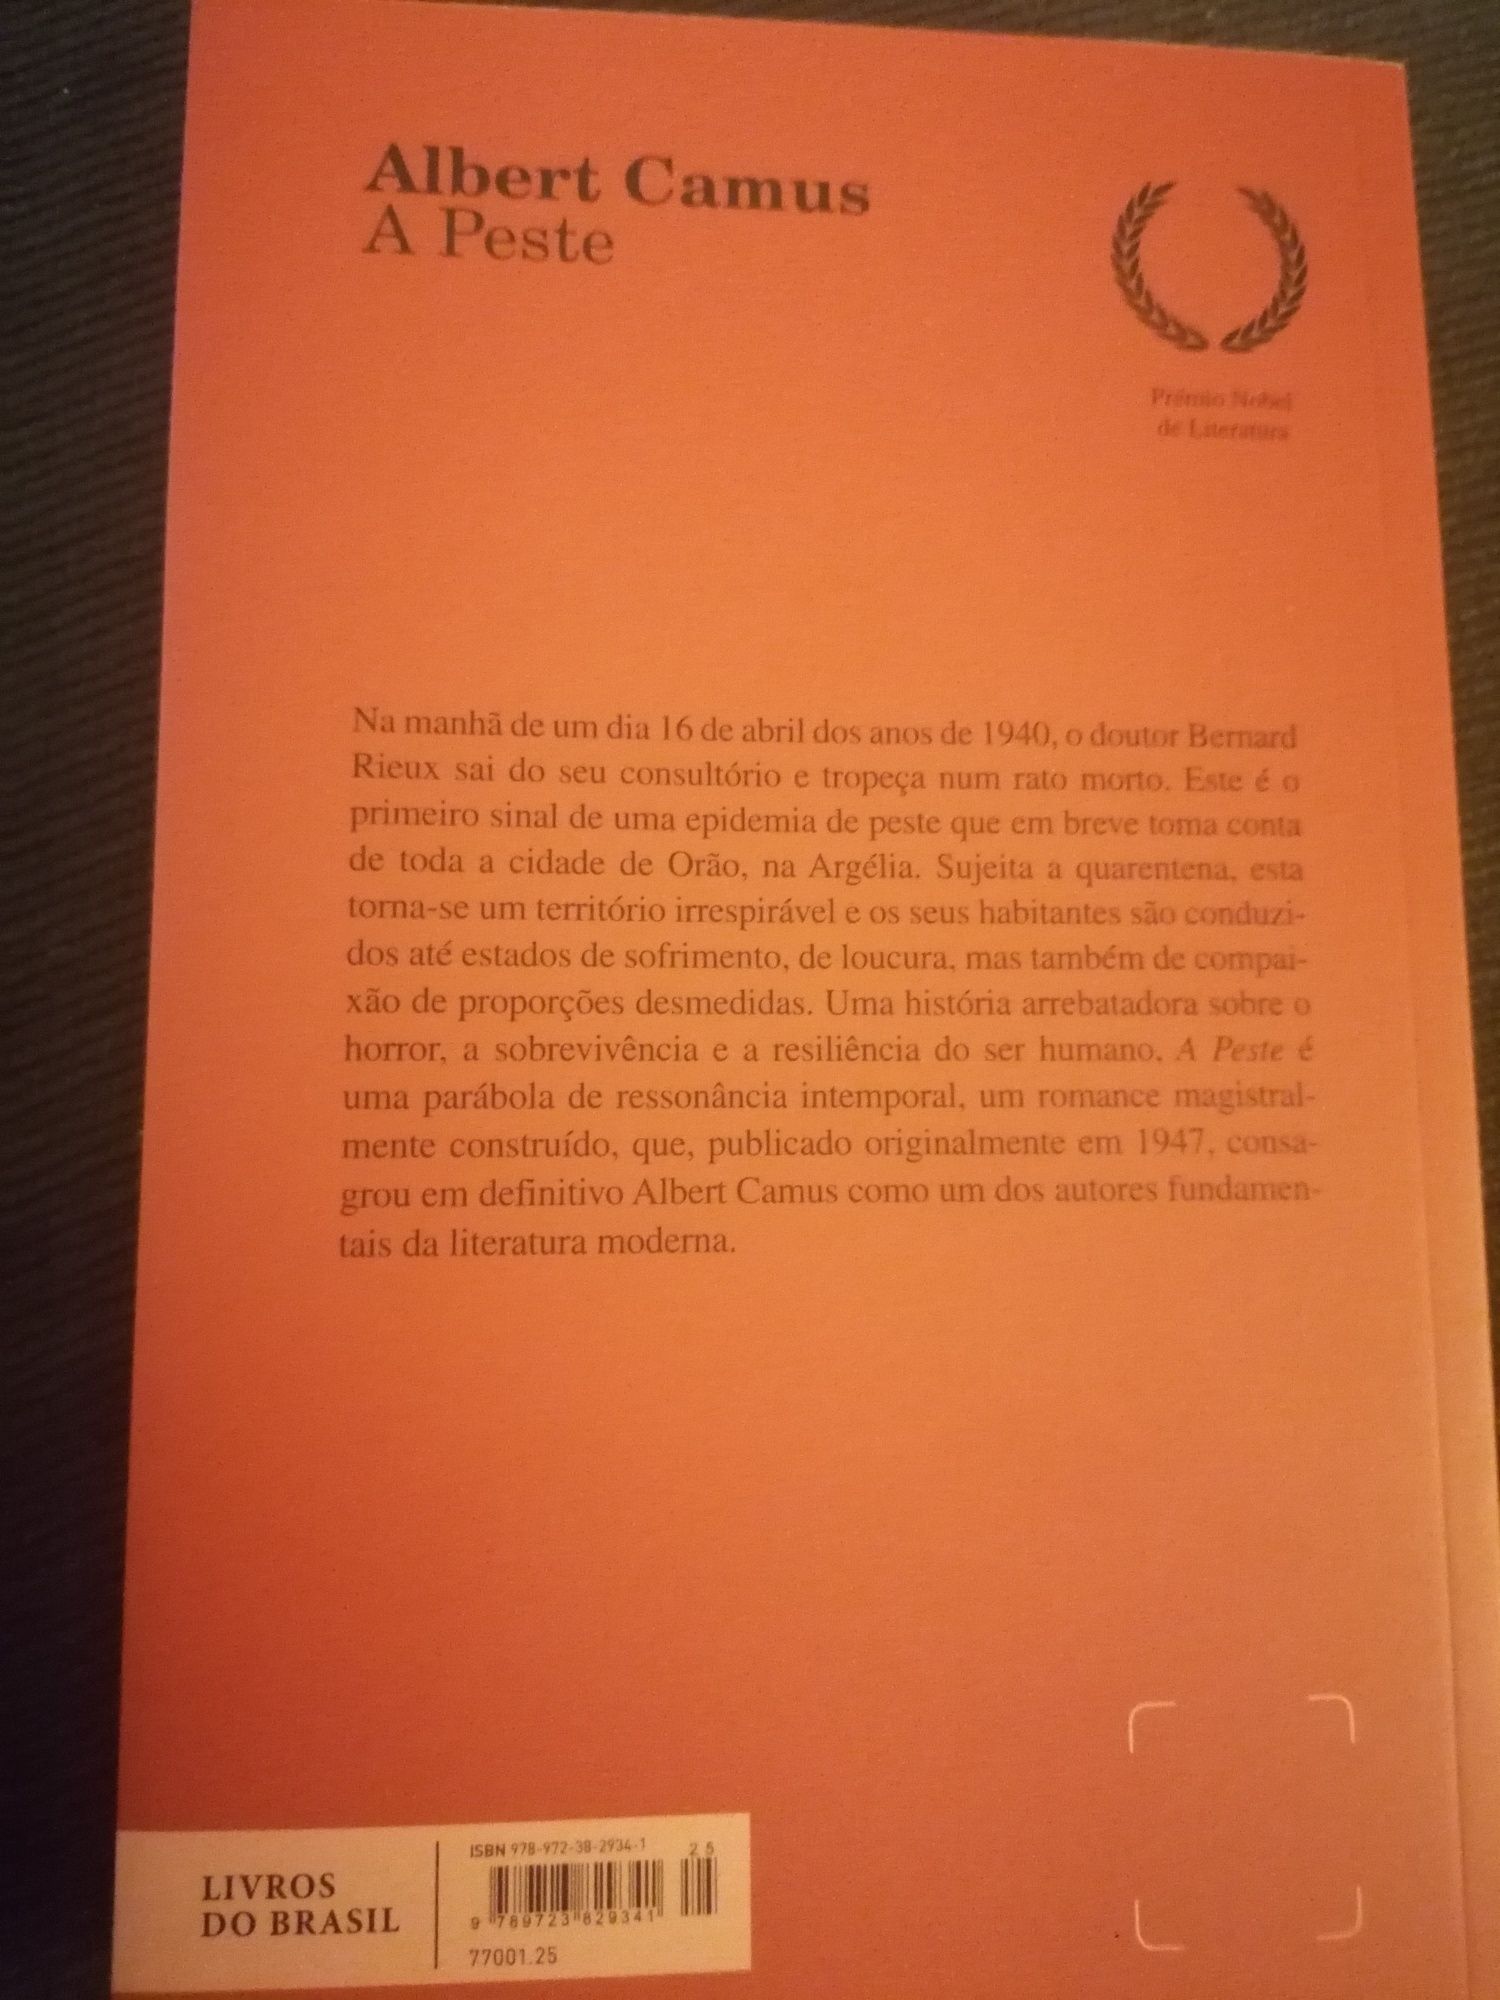 Livro "A Peste" de Albert Camus NOVO